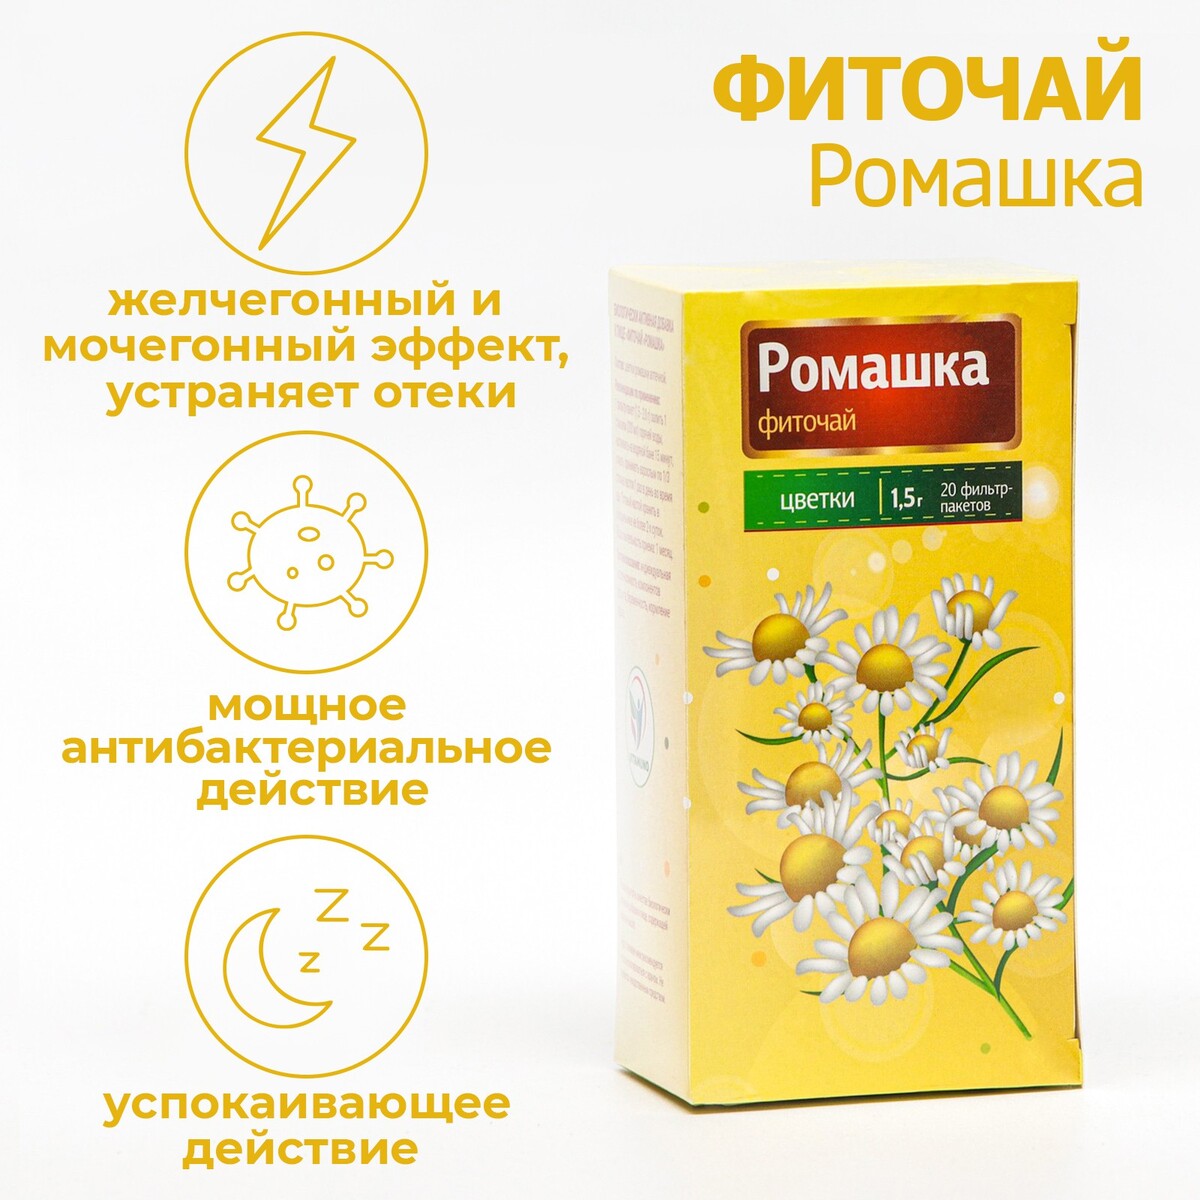 Фиточай ромашка vitamuno для взрослых, 20 фильтр-пакетов по 1.5 г Vitamuno 08129540 - фото 1